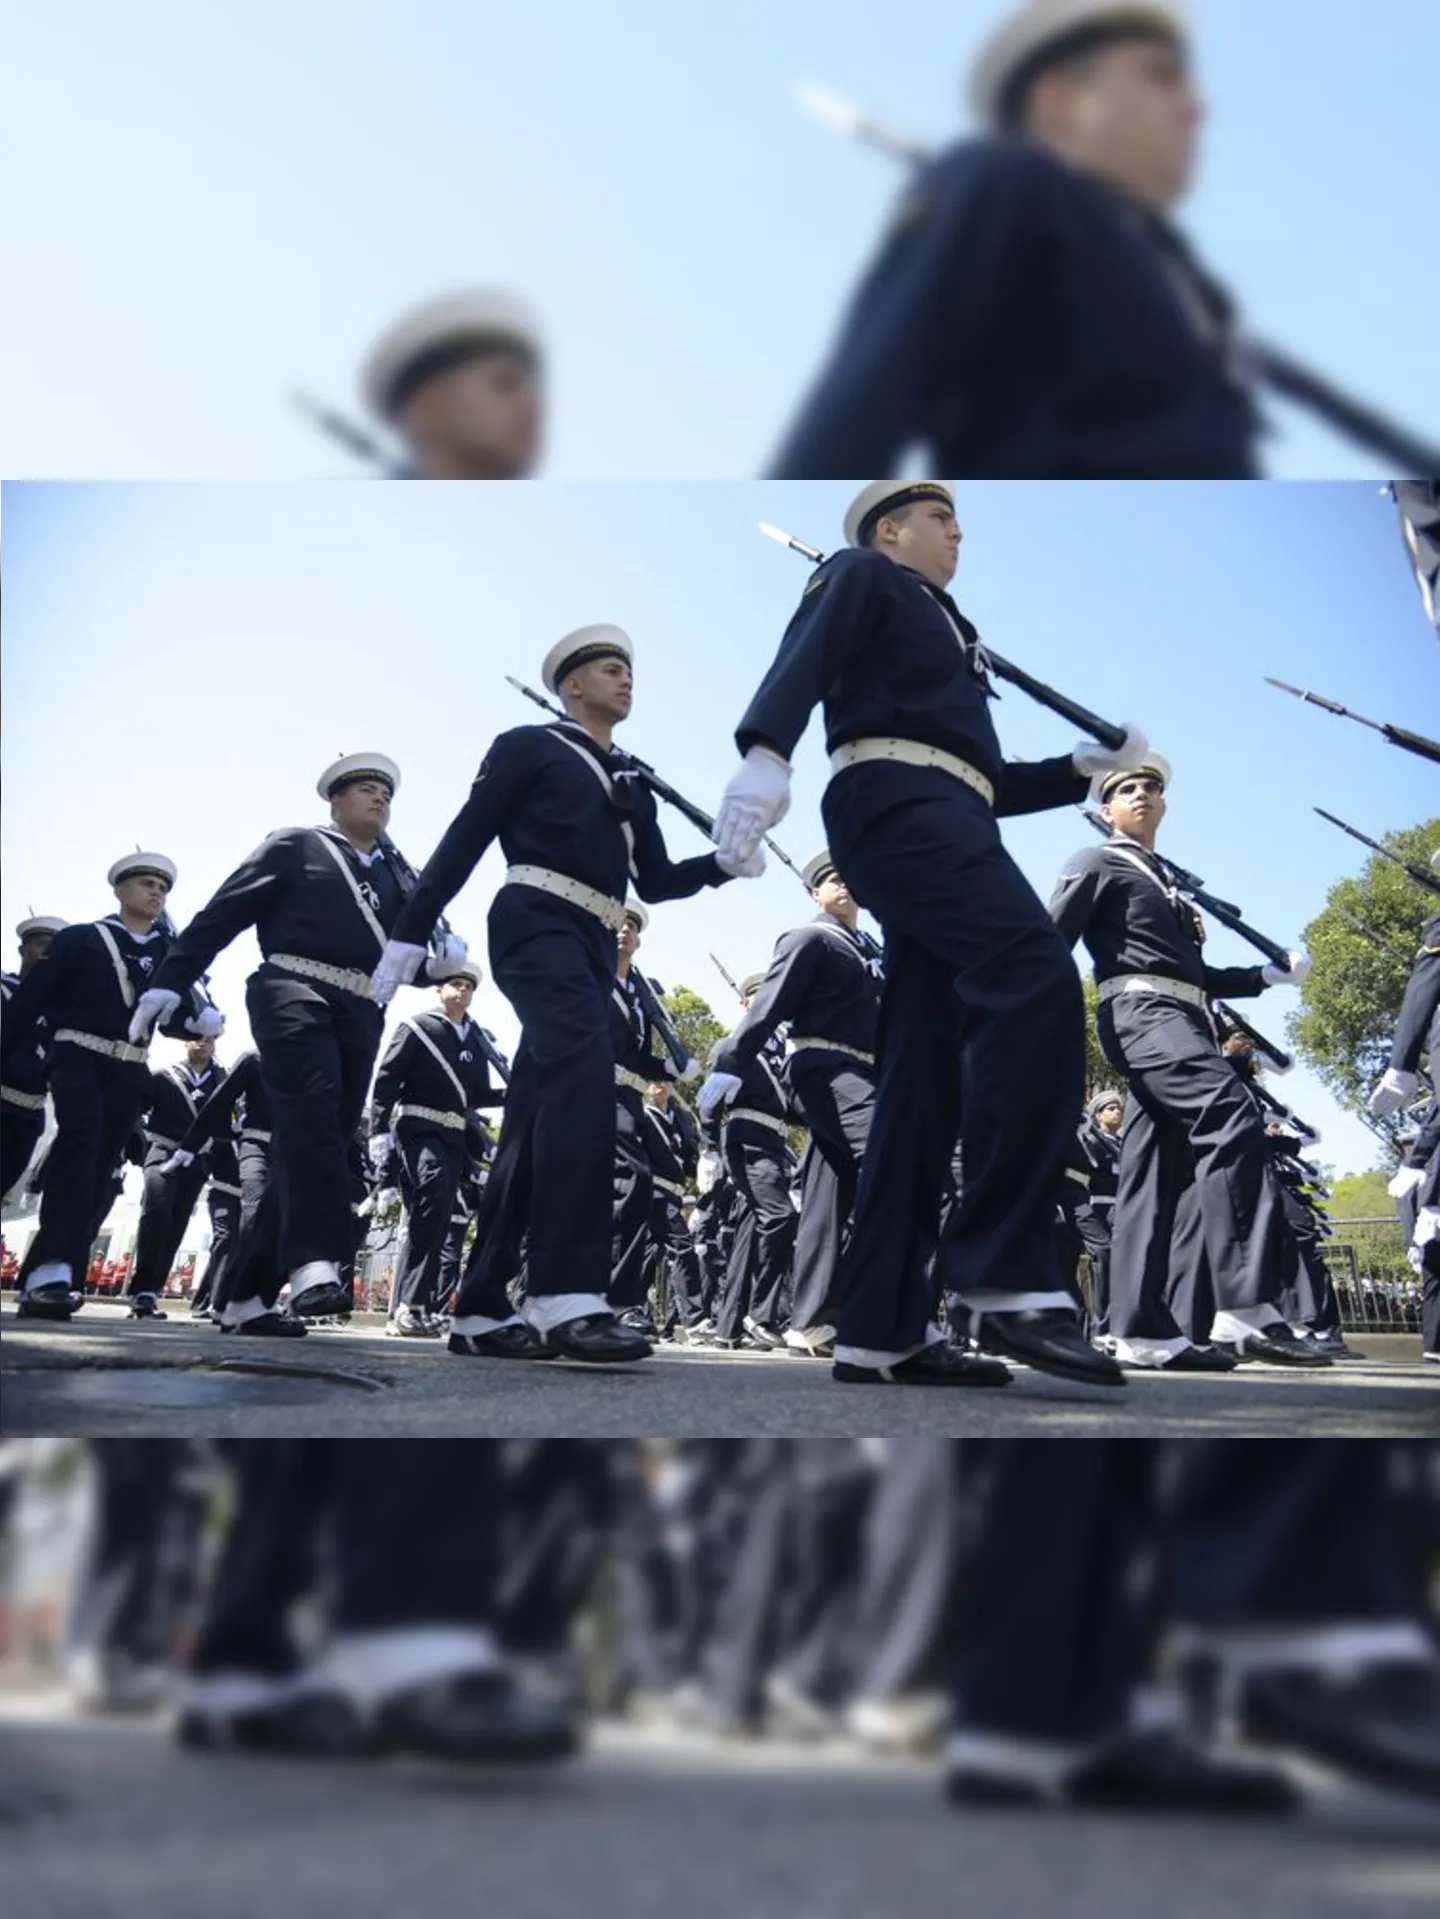 Desfile teve a participação do Exército Brasileiro, da Marinha do Brasil, da Força Aérea Brasileira, entre outros